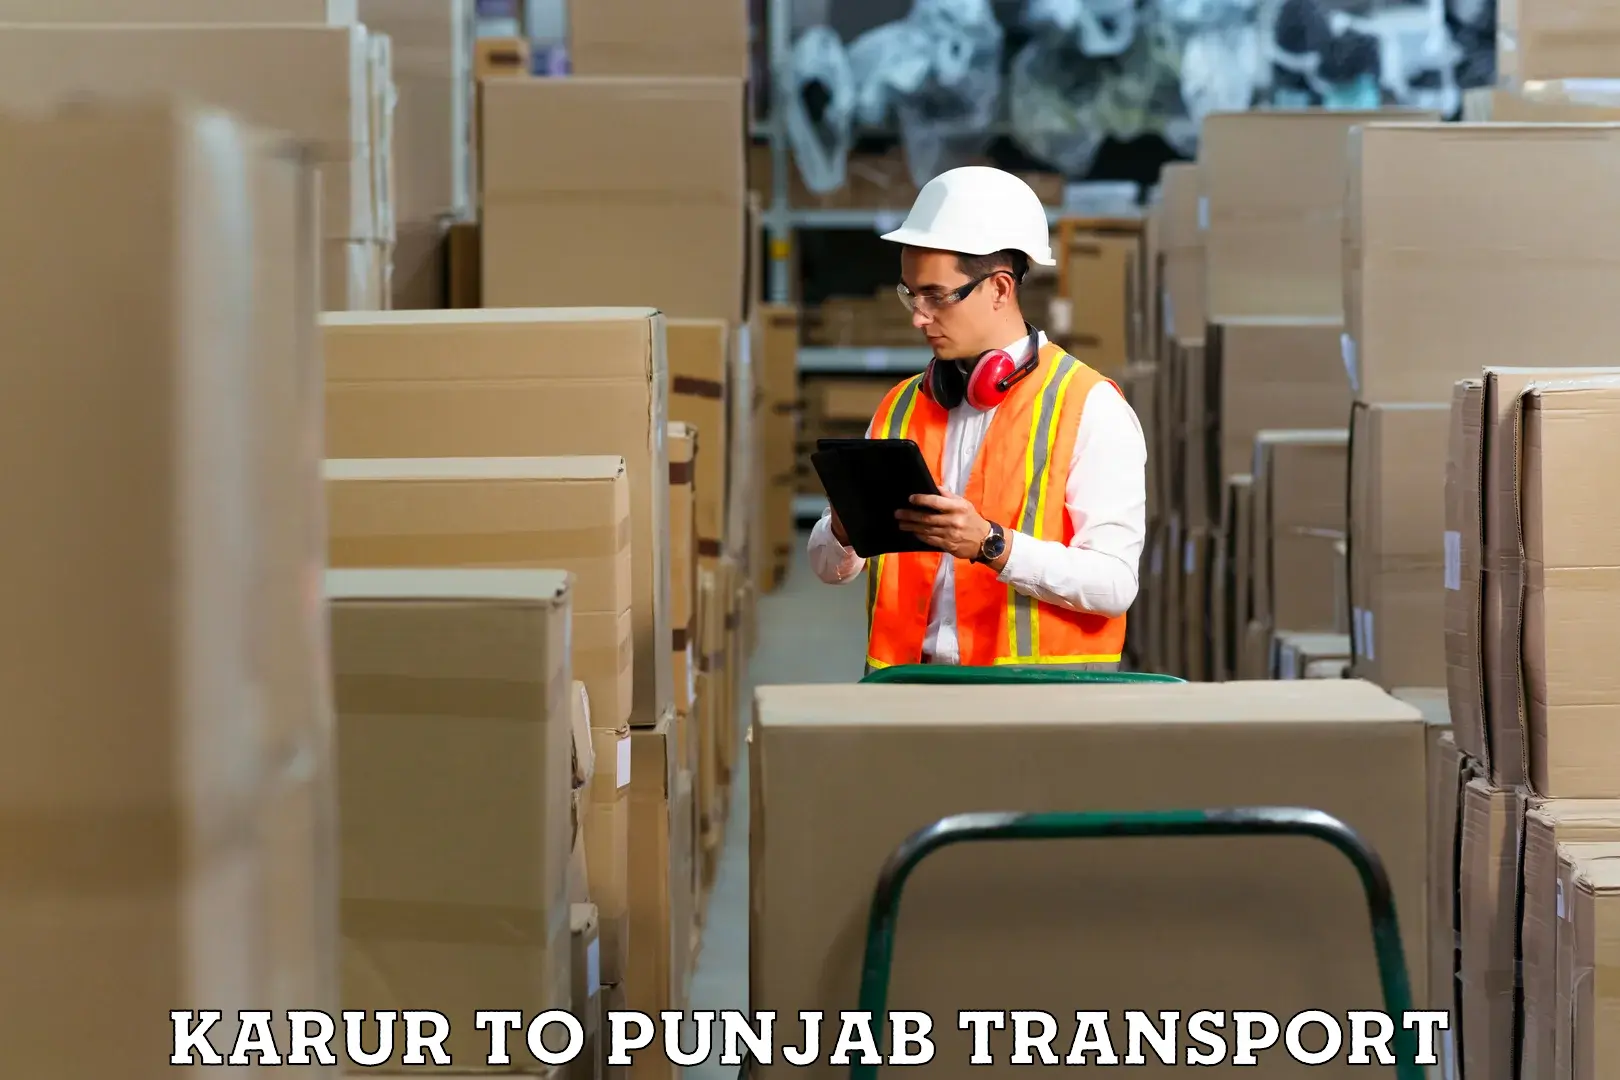 Luggage transport services Karur to Punjab